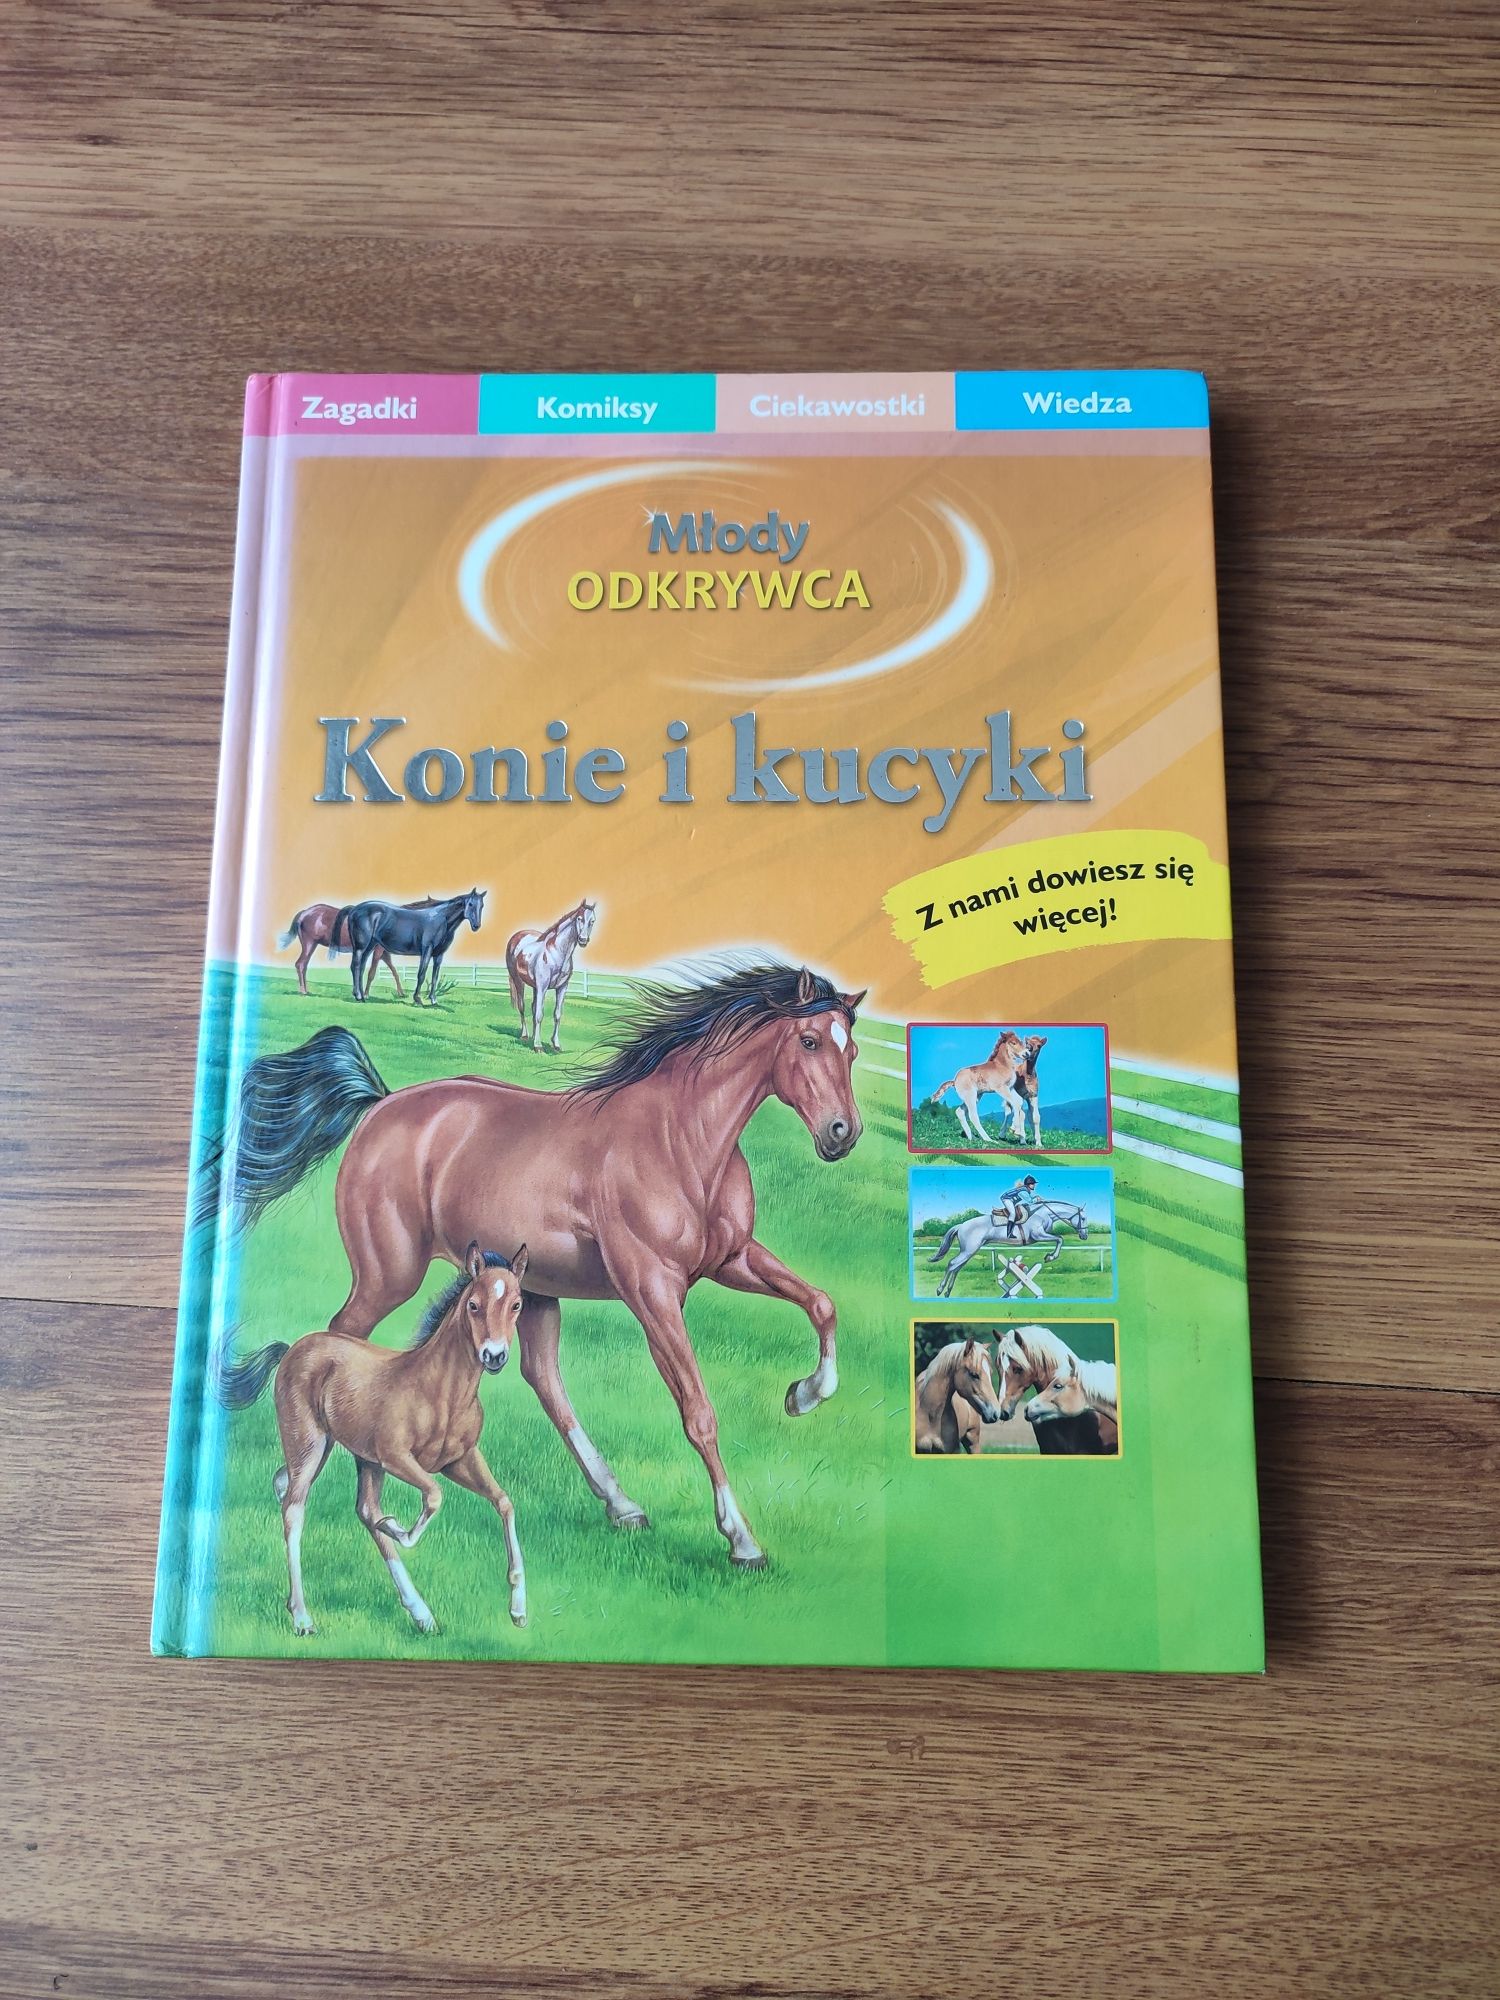 Książka "Konie i kucyki" seria młody odkrywca